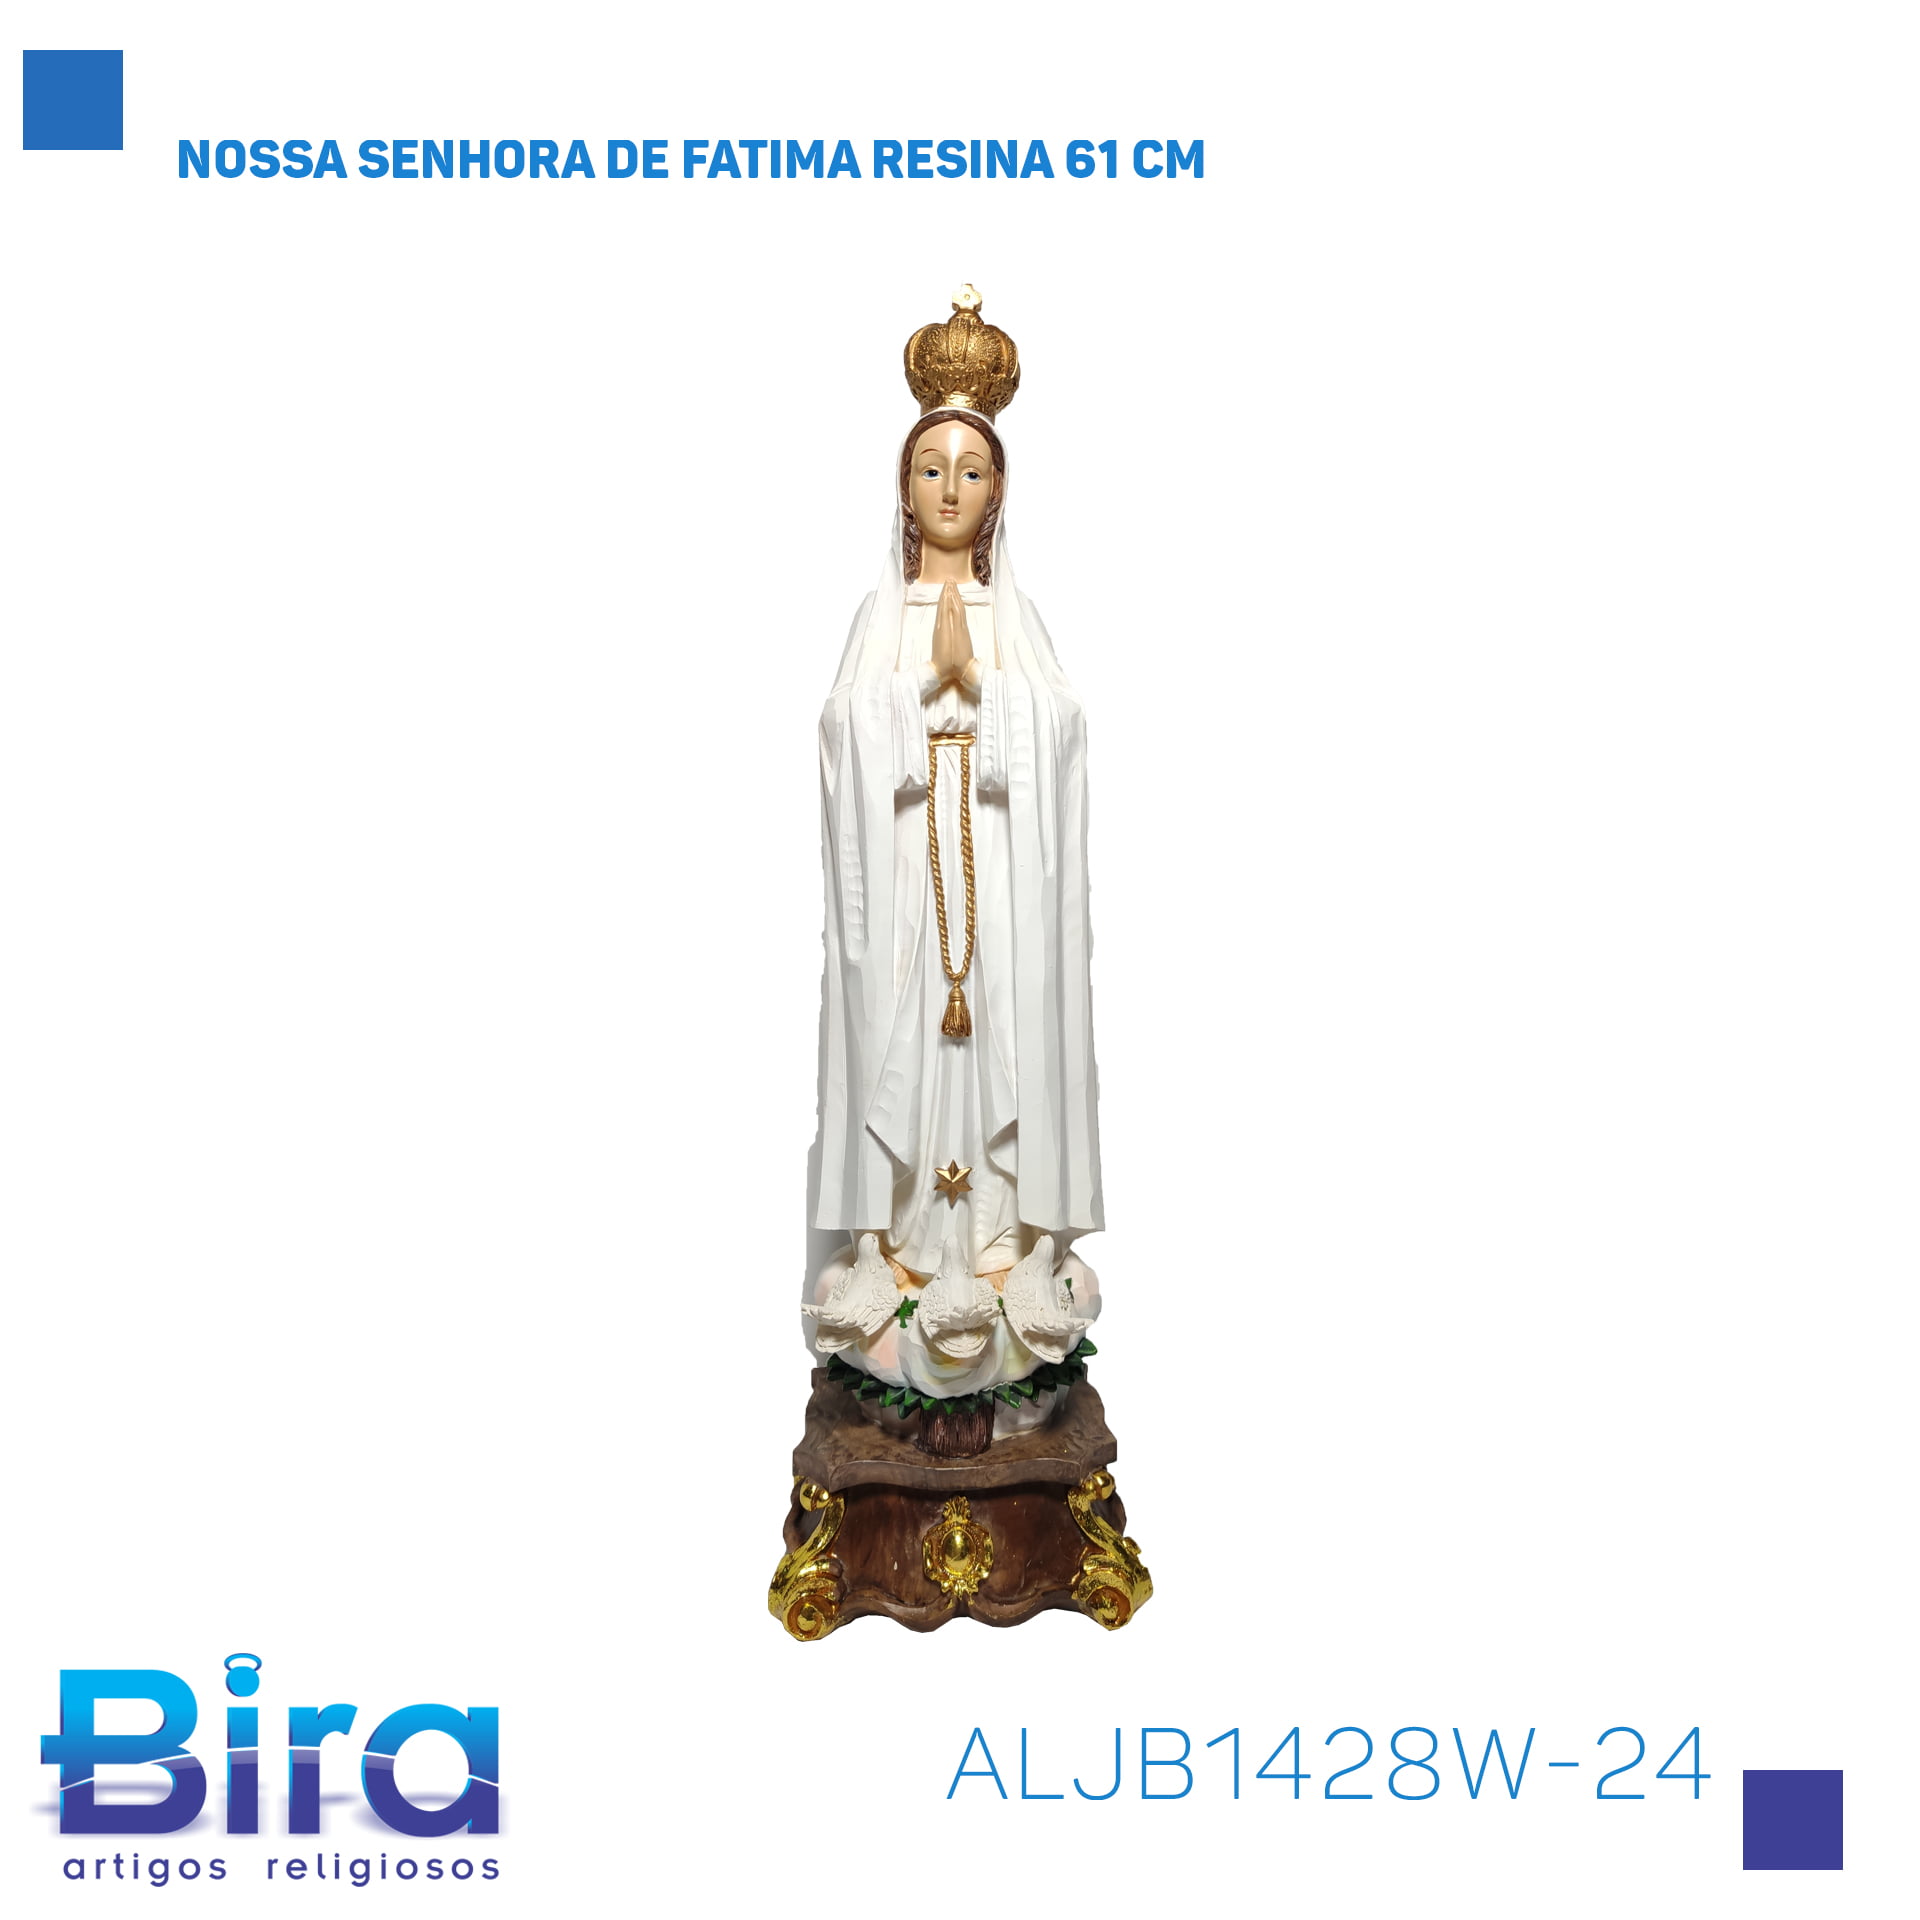 Bira Artigos Religiosos - NOSSA SENHORA DE FÁTIMA RESINA 61 CM - CÓD. ALJB1428W-24